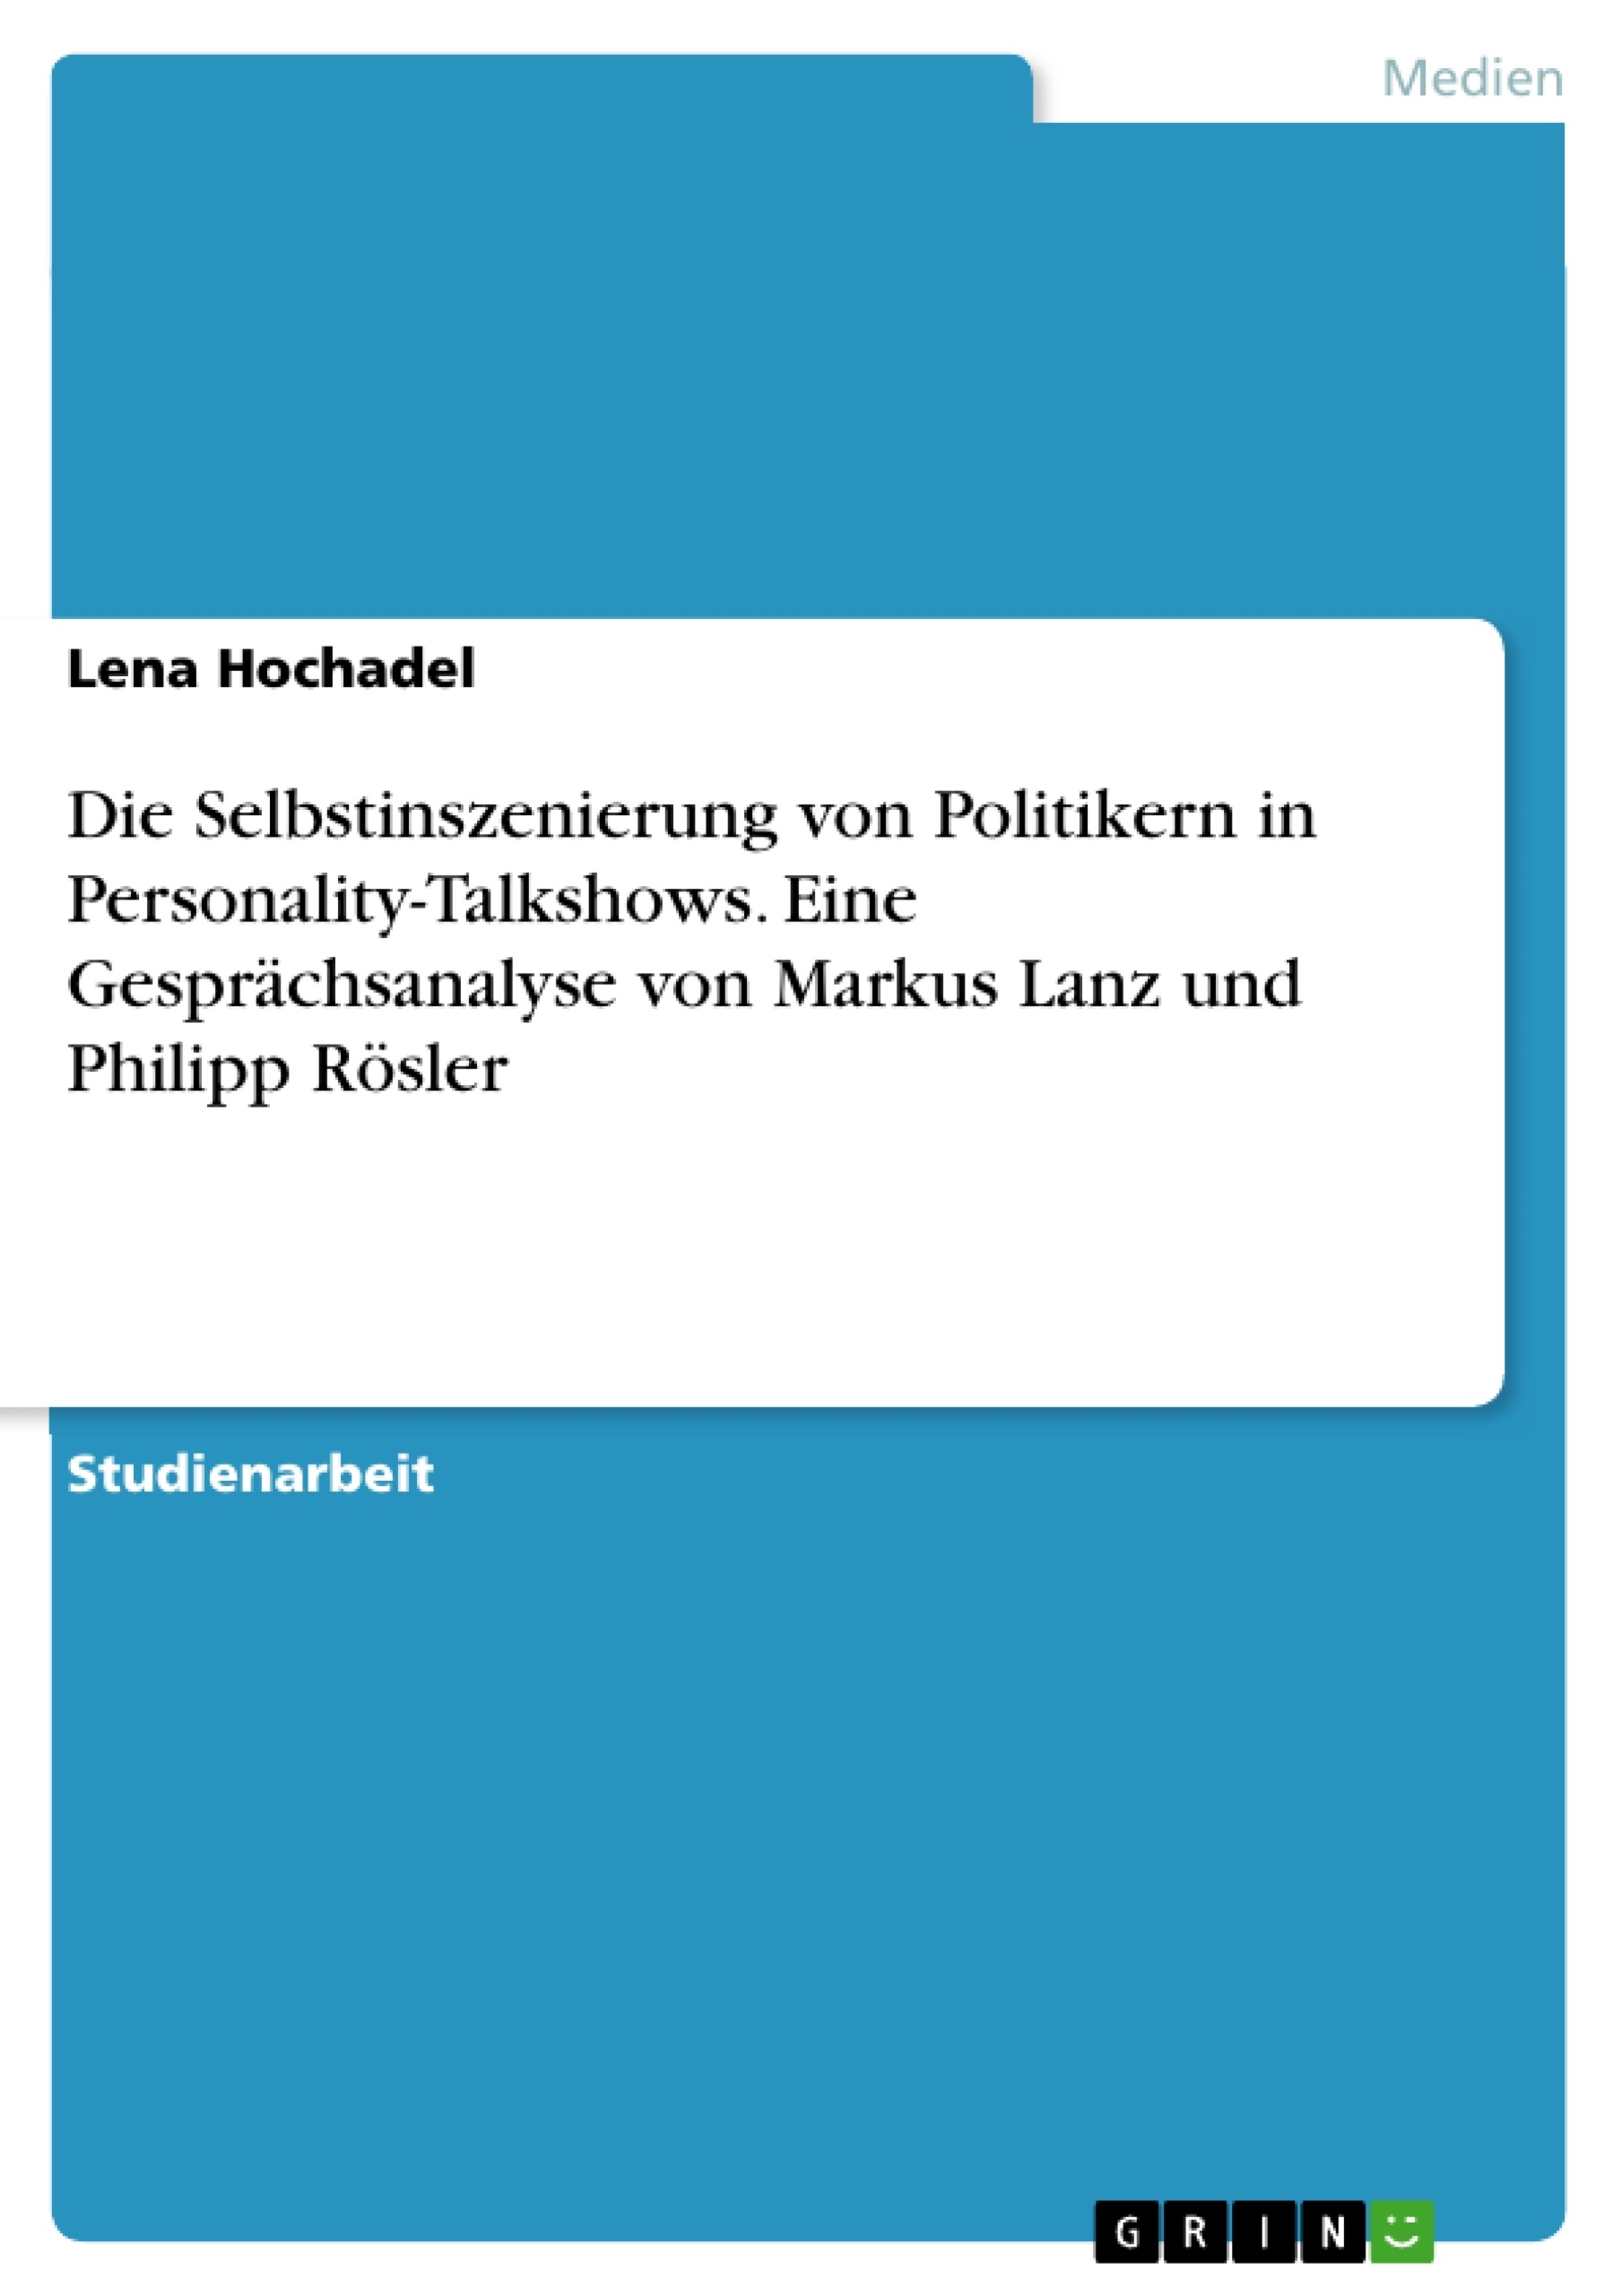 Titre: Die Selbstinszenierung von Politikern in Personality-Talkshows. Eine Gesprächsanalyse von Markus Lanz und Philipp Rösler